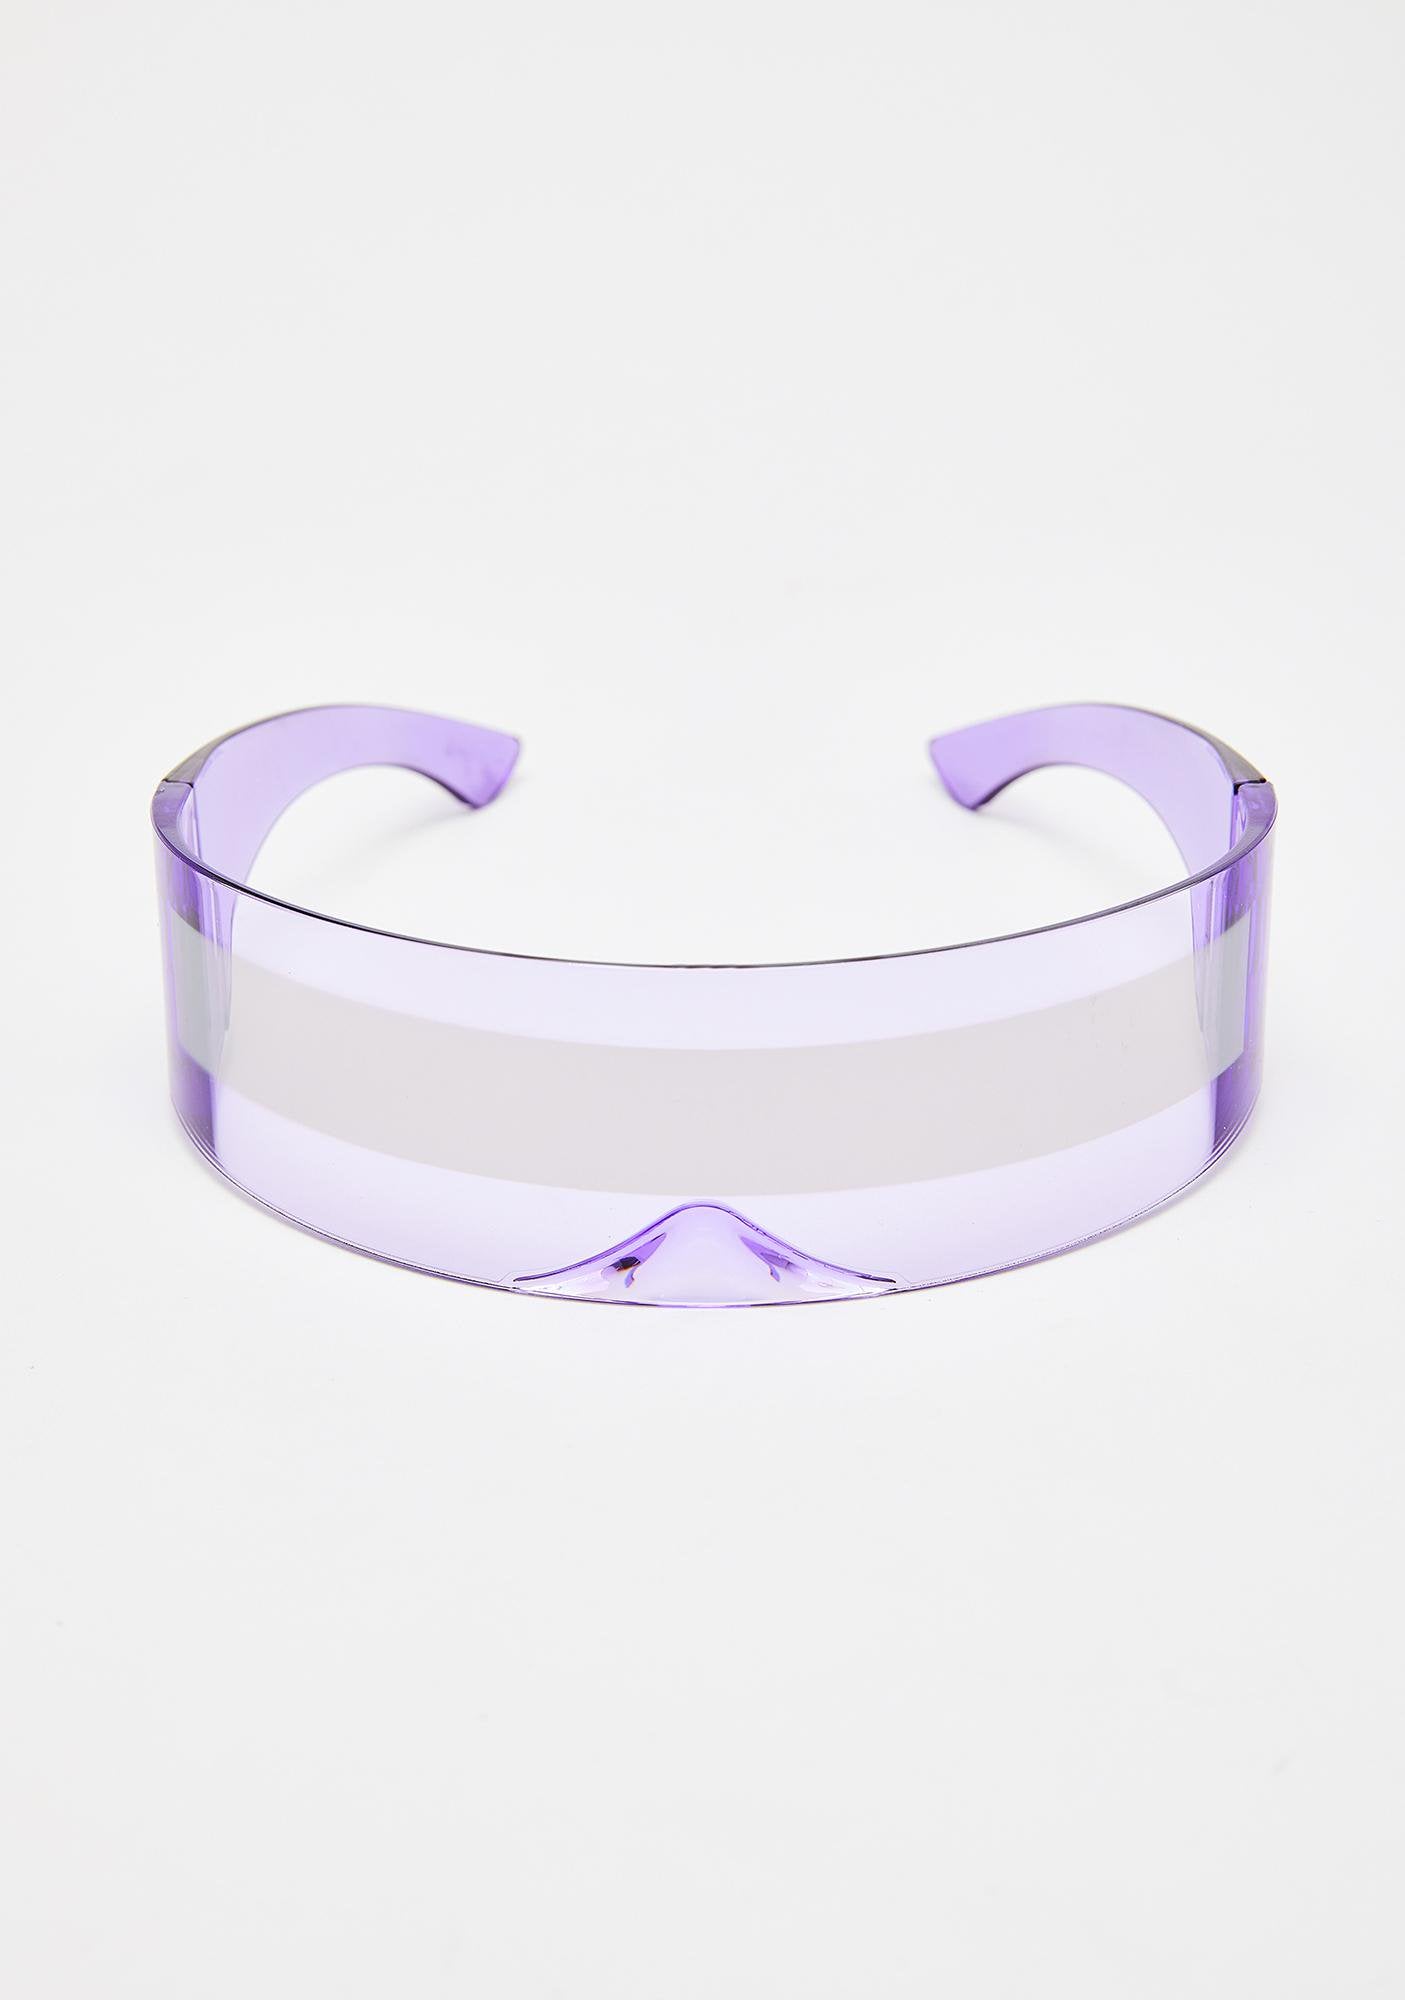 TEEK - Future Wrapped Sunglasses EYEGLASSES theteekdotcom 1  